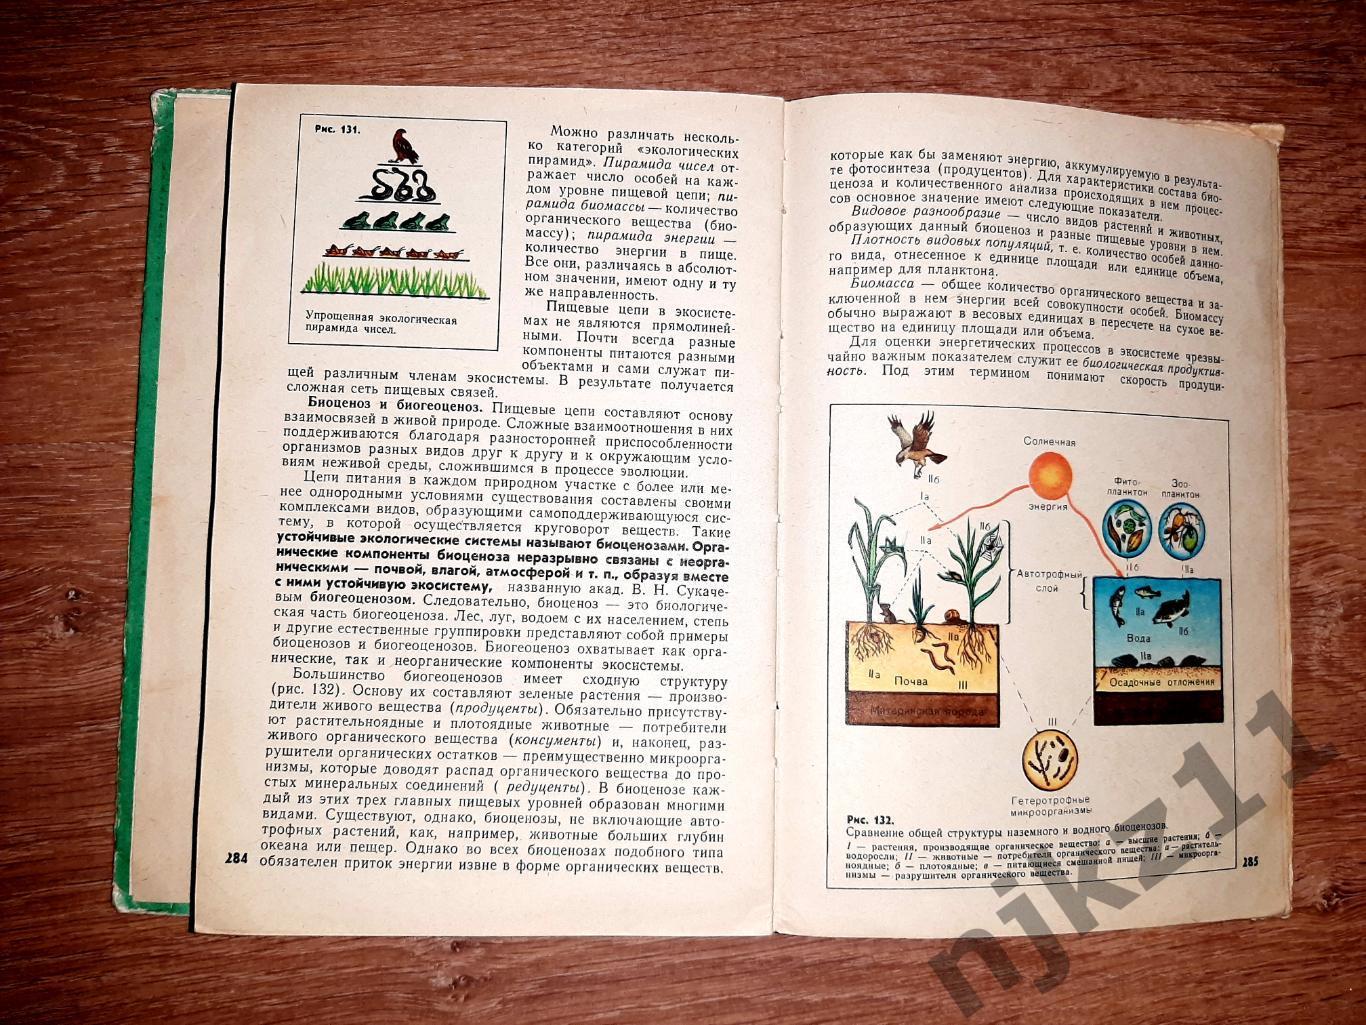 Полянский, Ю.И. Общая биология. Учебник для 9-10 классов 1977г 5